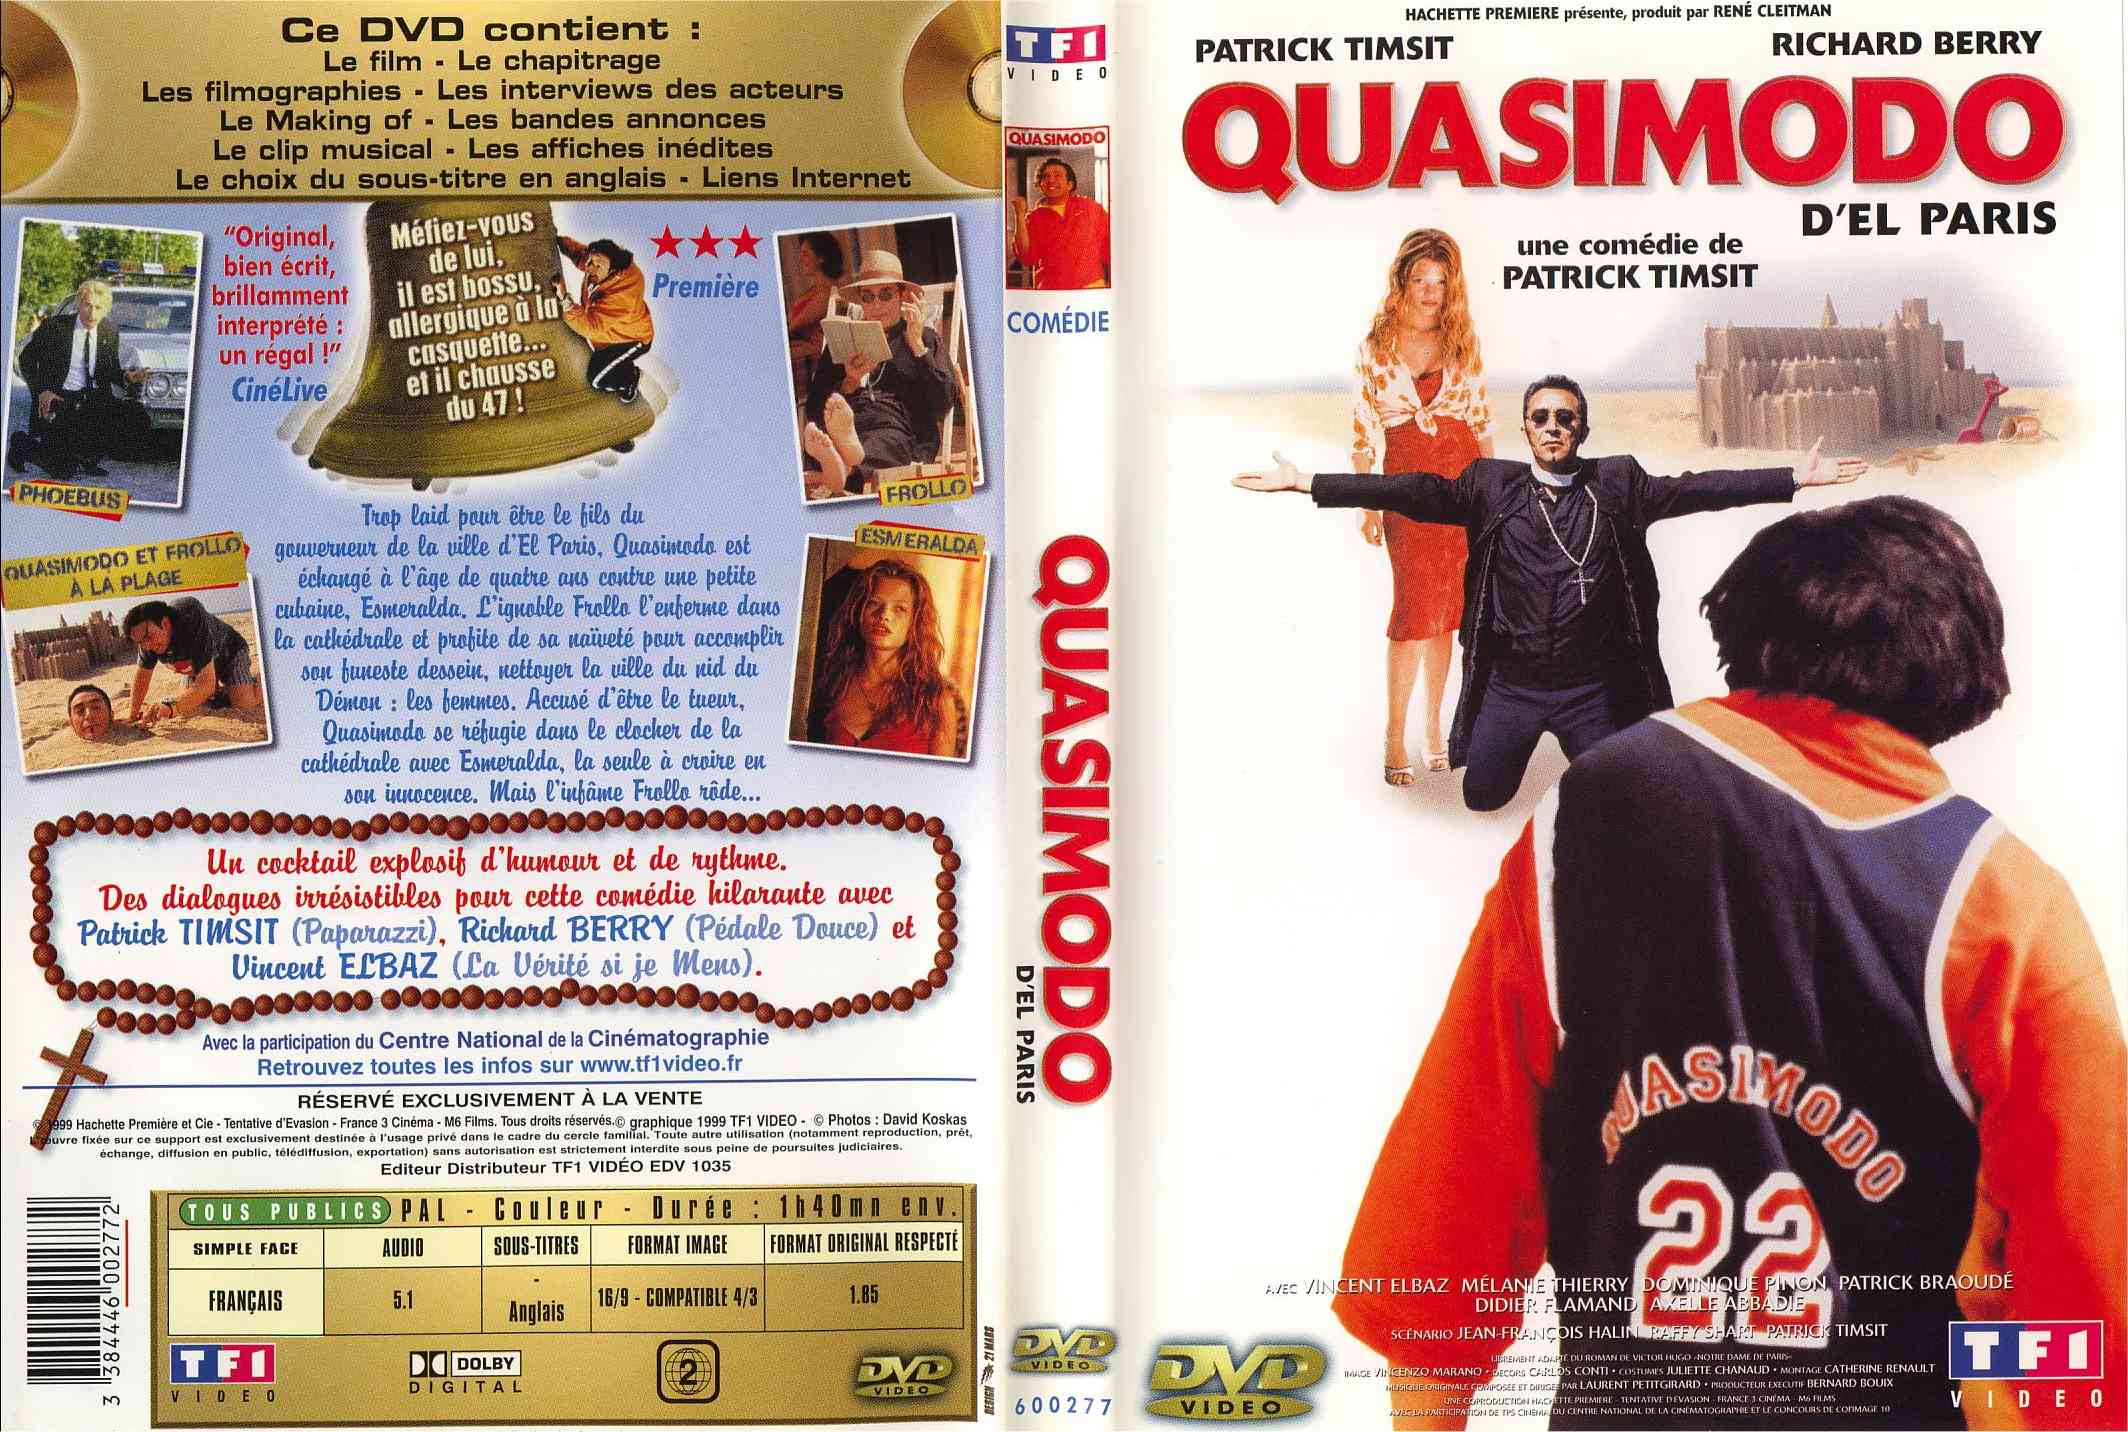 Jaquette DVD Quasimodo del paris